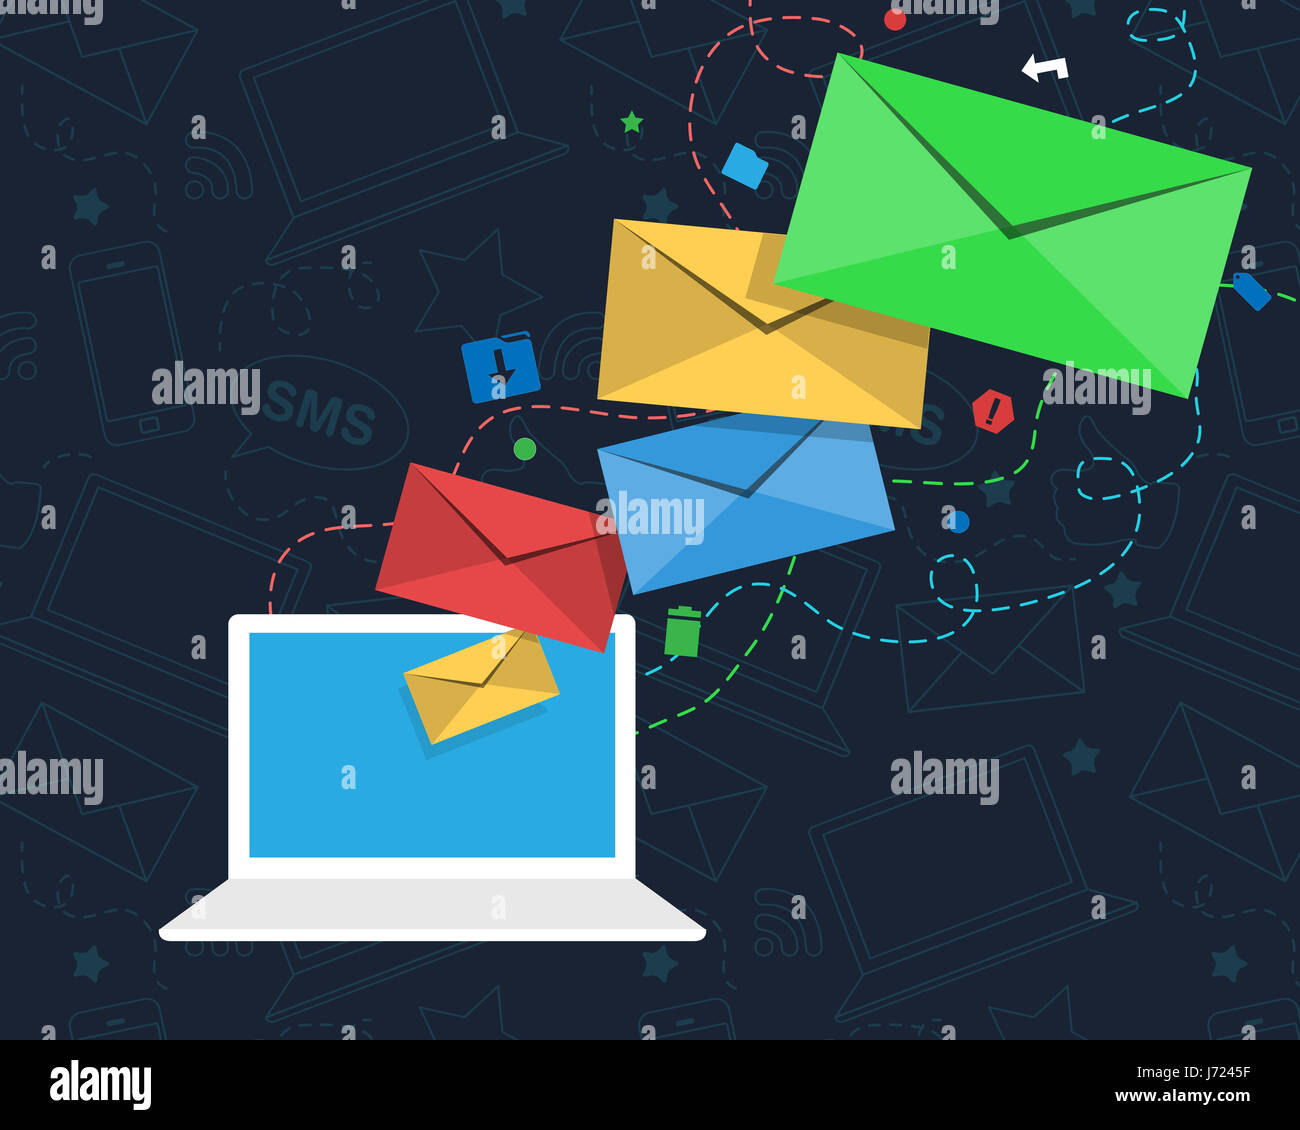 Un bulletin d'email concept avec enveloppes colorées des vols depuis l'écran d'un ordinateur portable. L'ordinateur est entouré par les icônes d'e-mail marketing. Banque D'Images